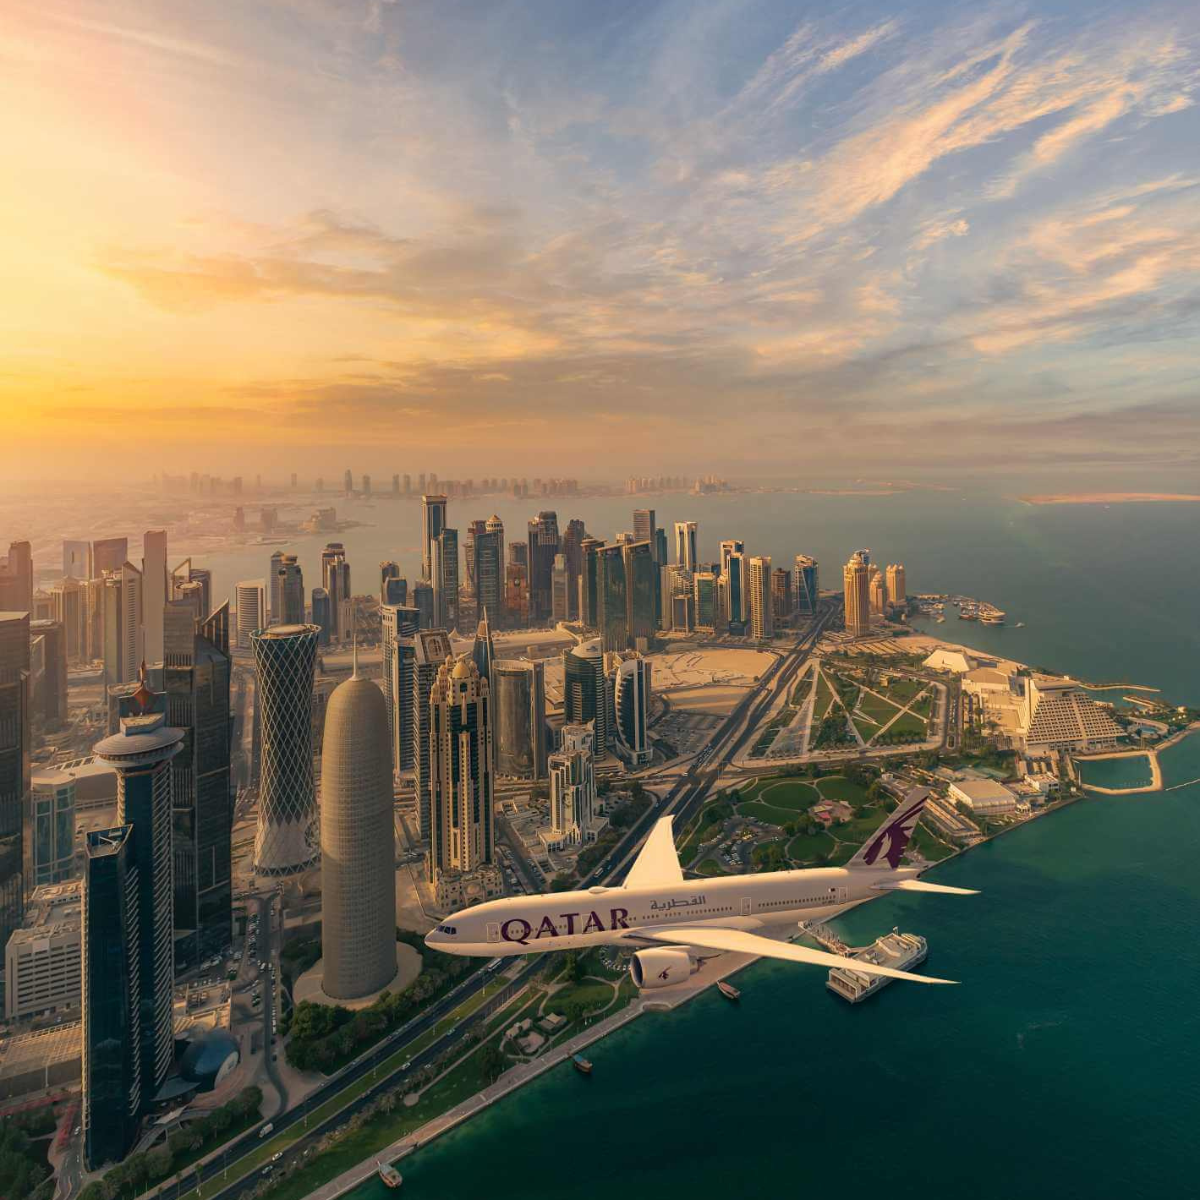 Qatar Airways - oneworld加盟航空会社 | oneworld